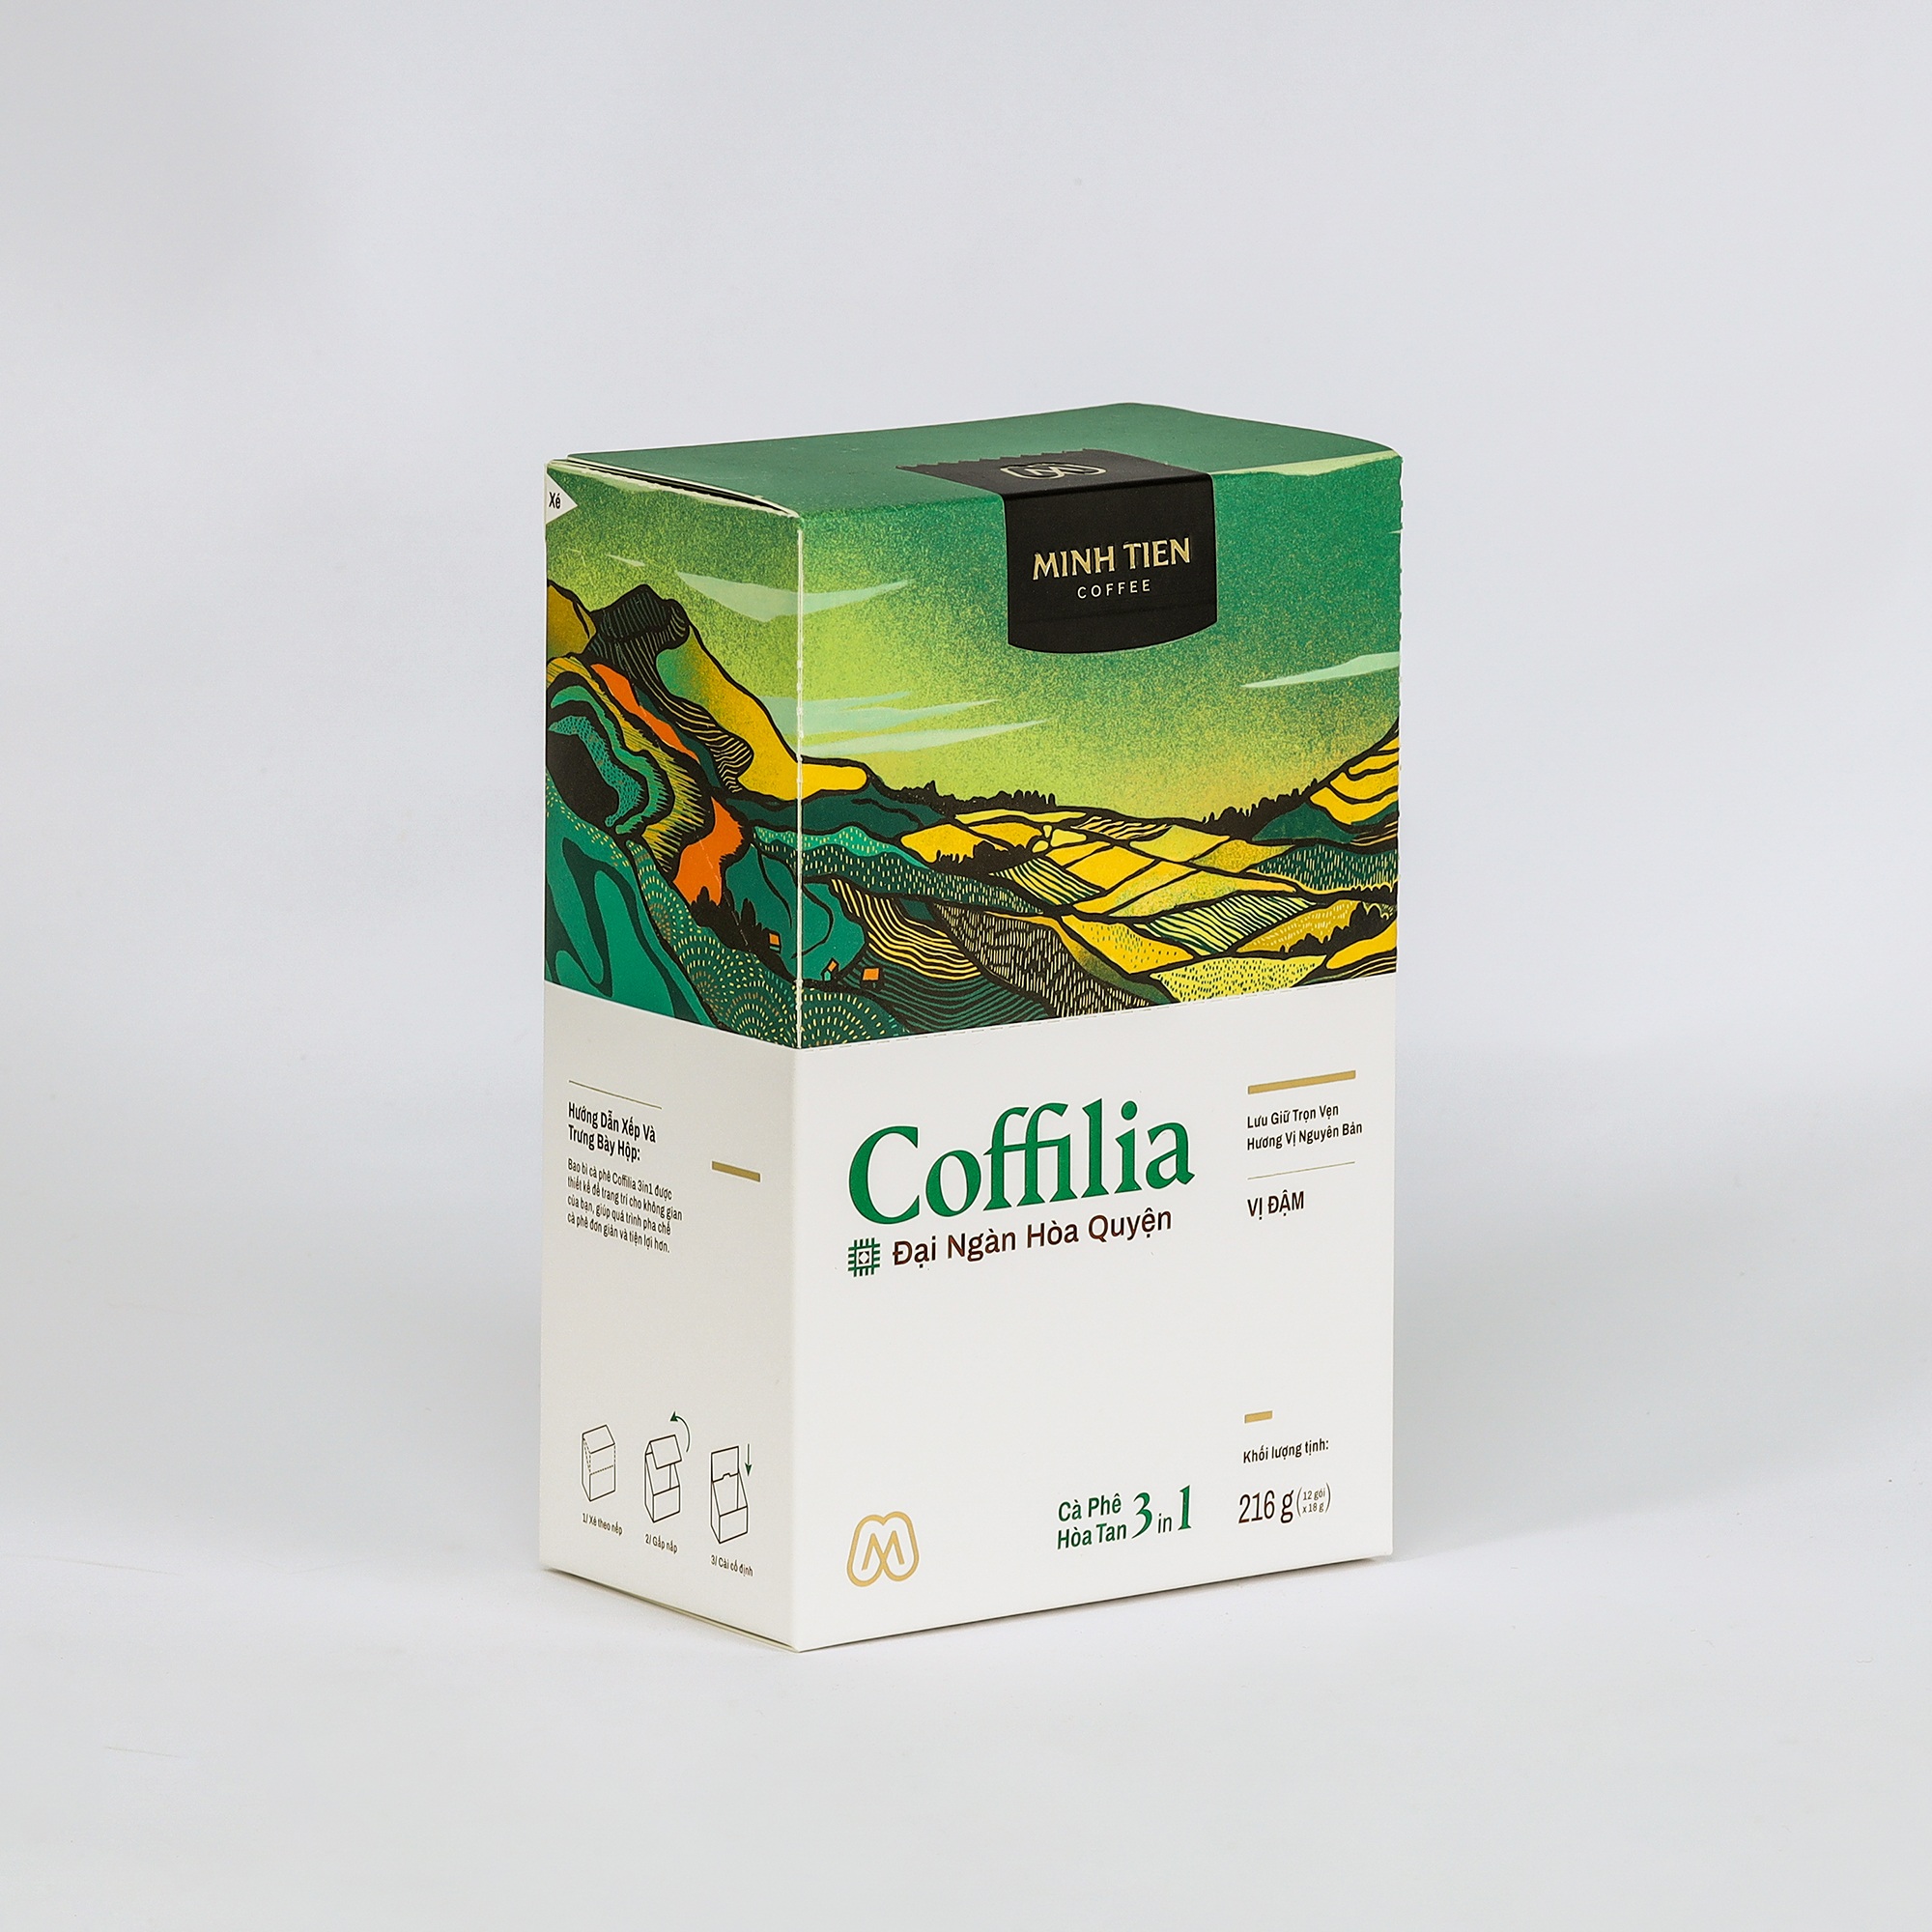 Cà phê hòa tan 3in1 - Sạch nguyên bản - Coffilia - Đại ngàn hòa quyện (12 gói)